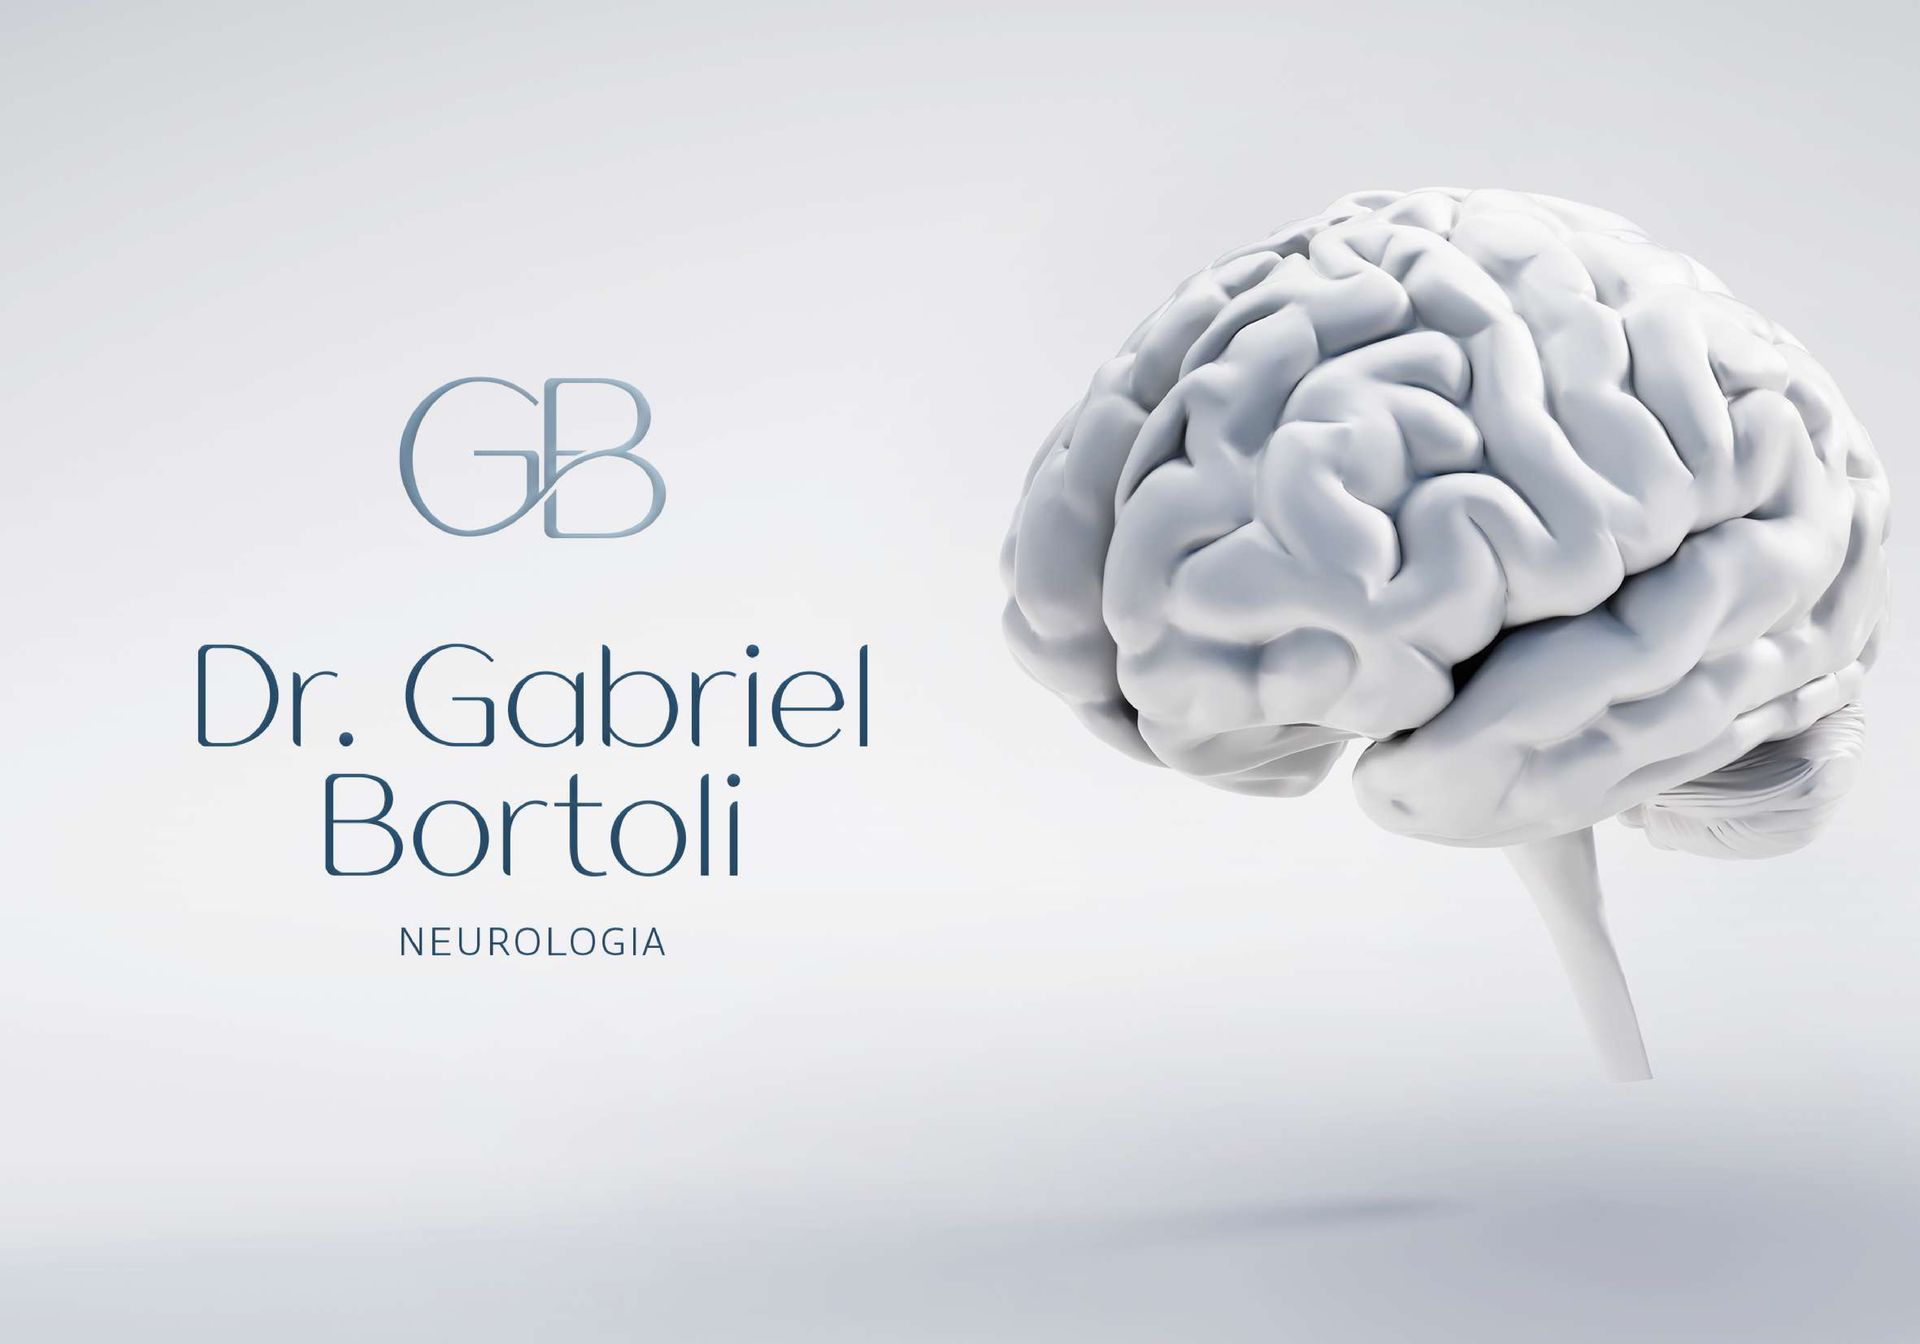 Gabriel Bortoli